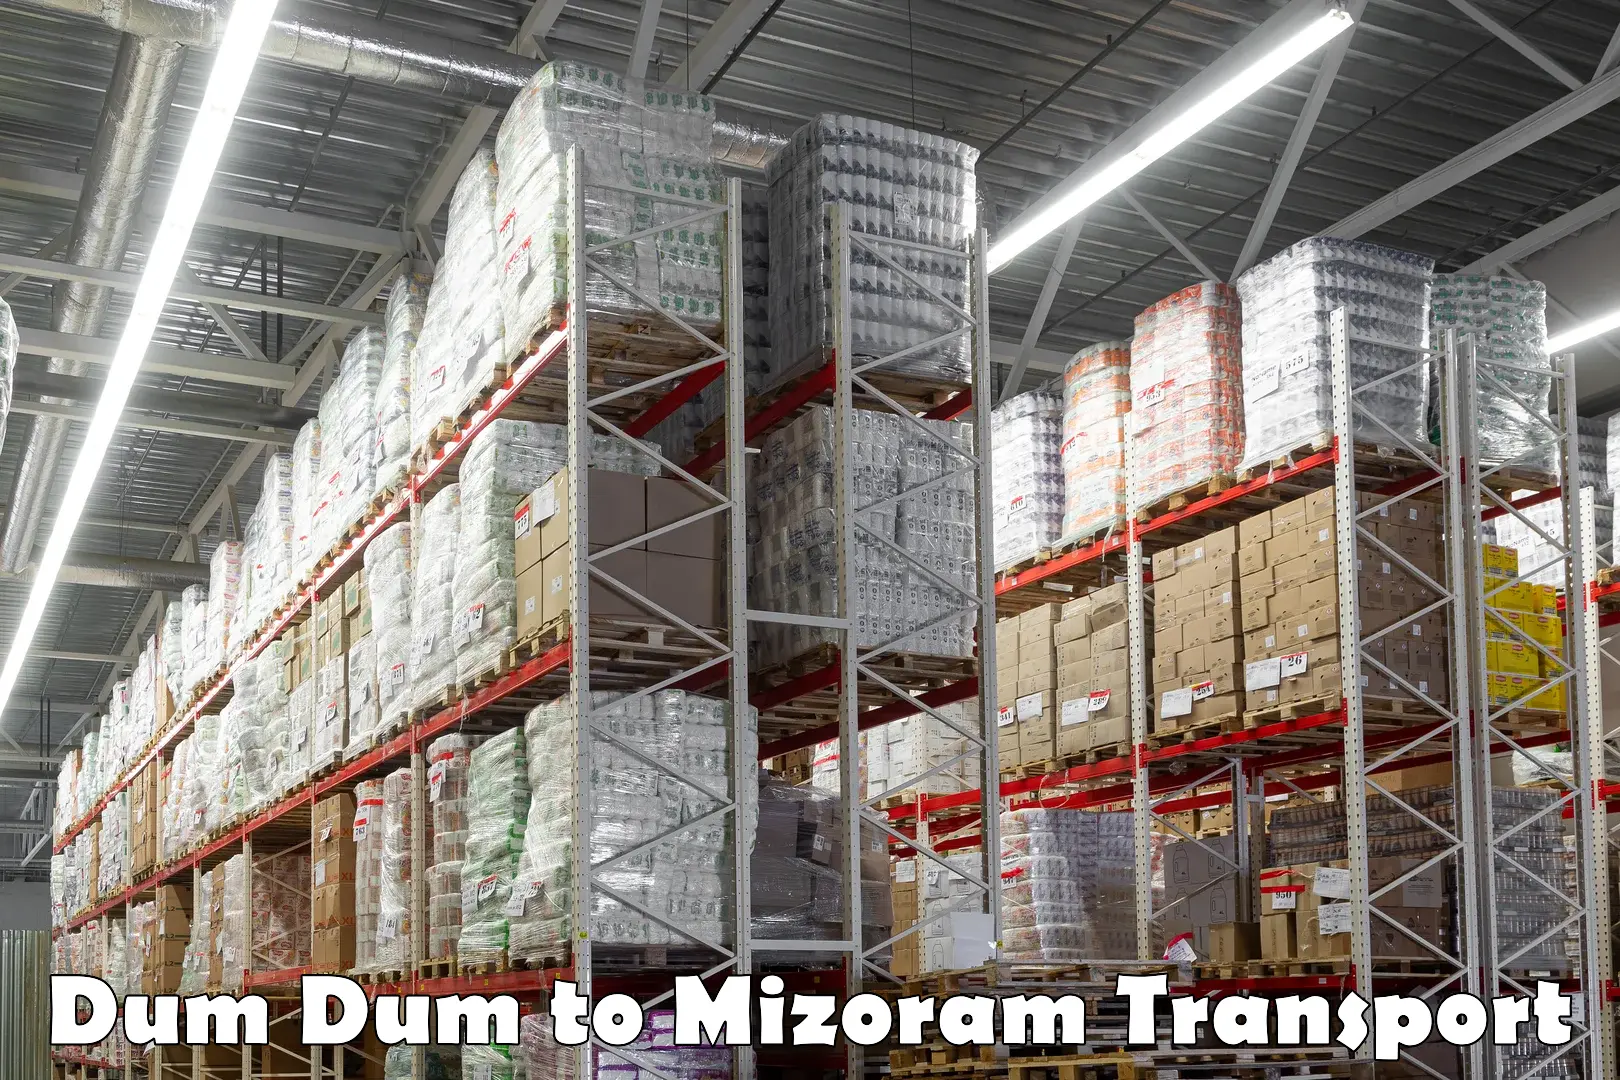 Daily transport service Dum Dum to Mizoram